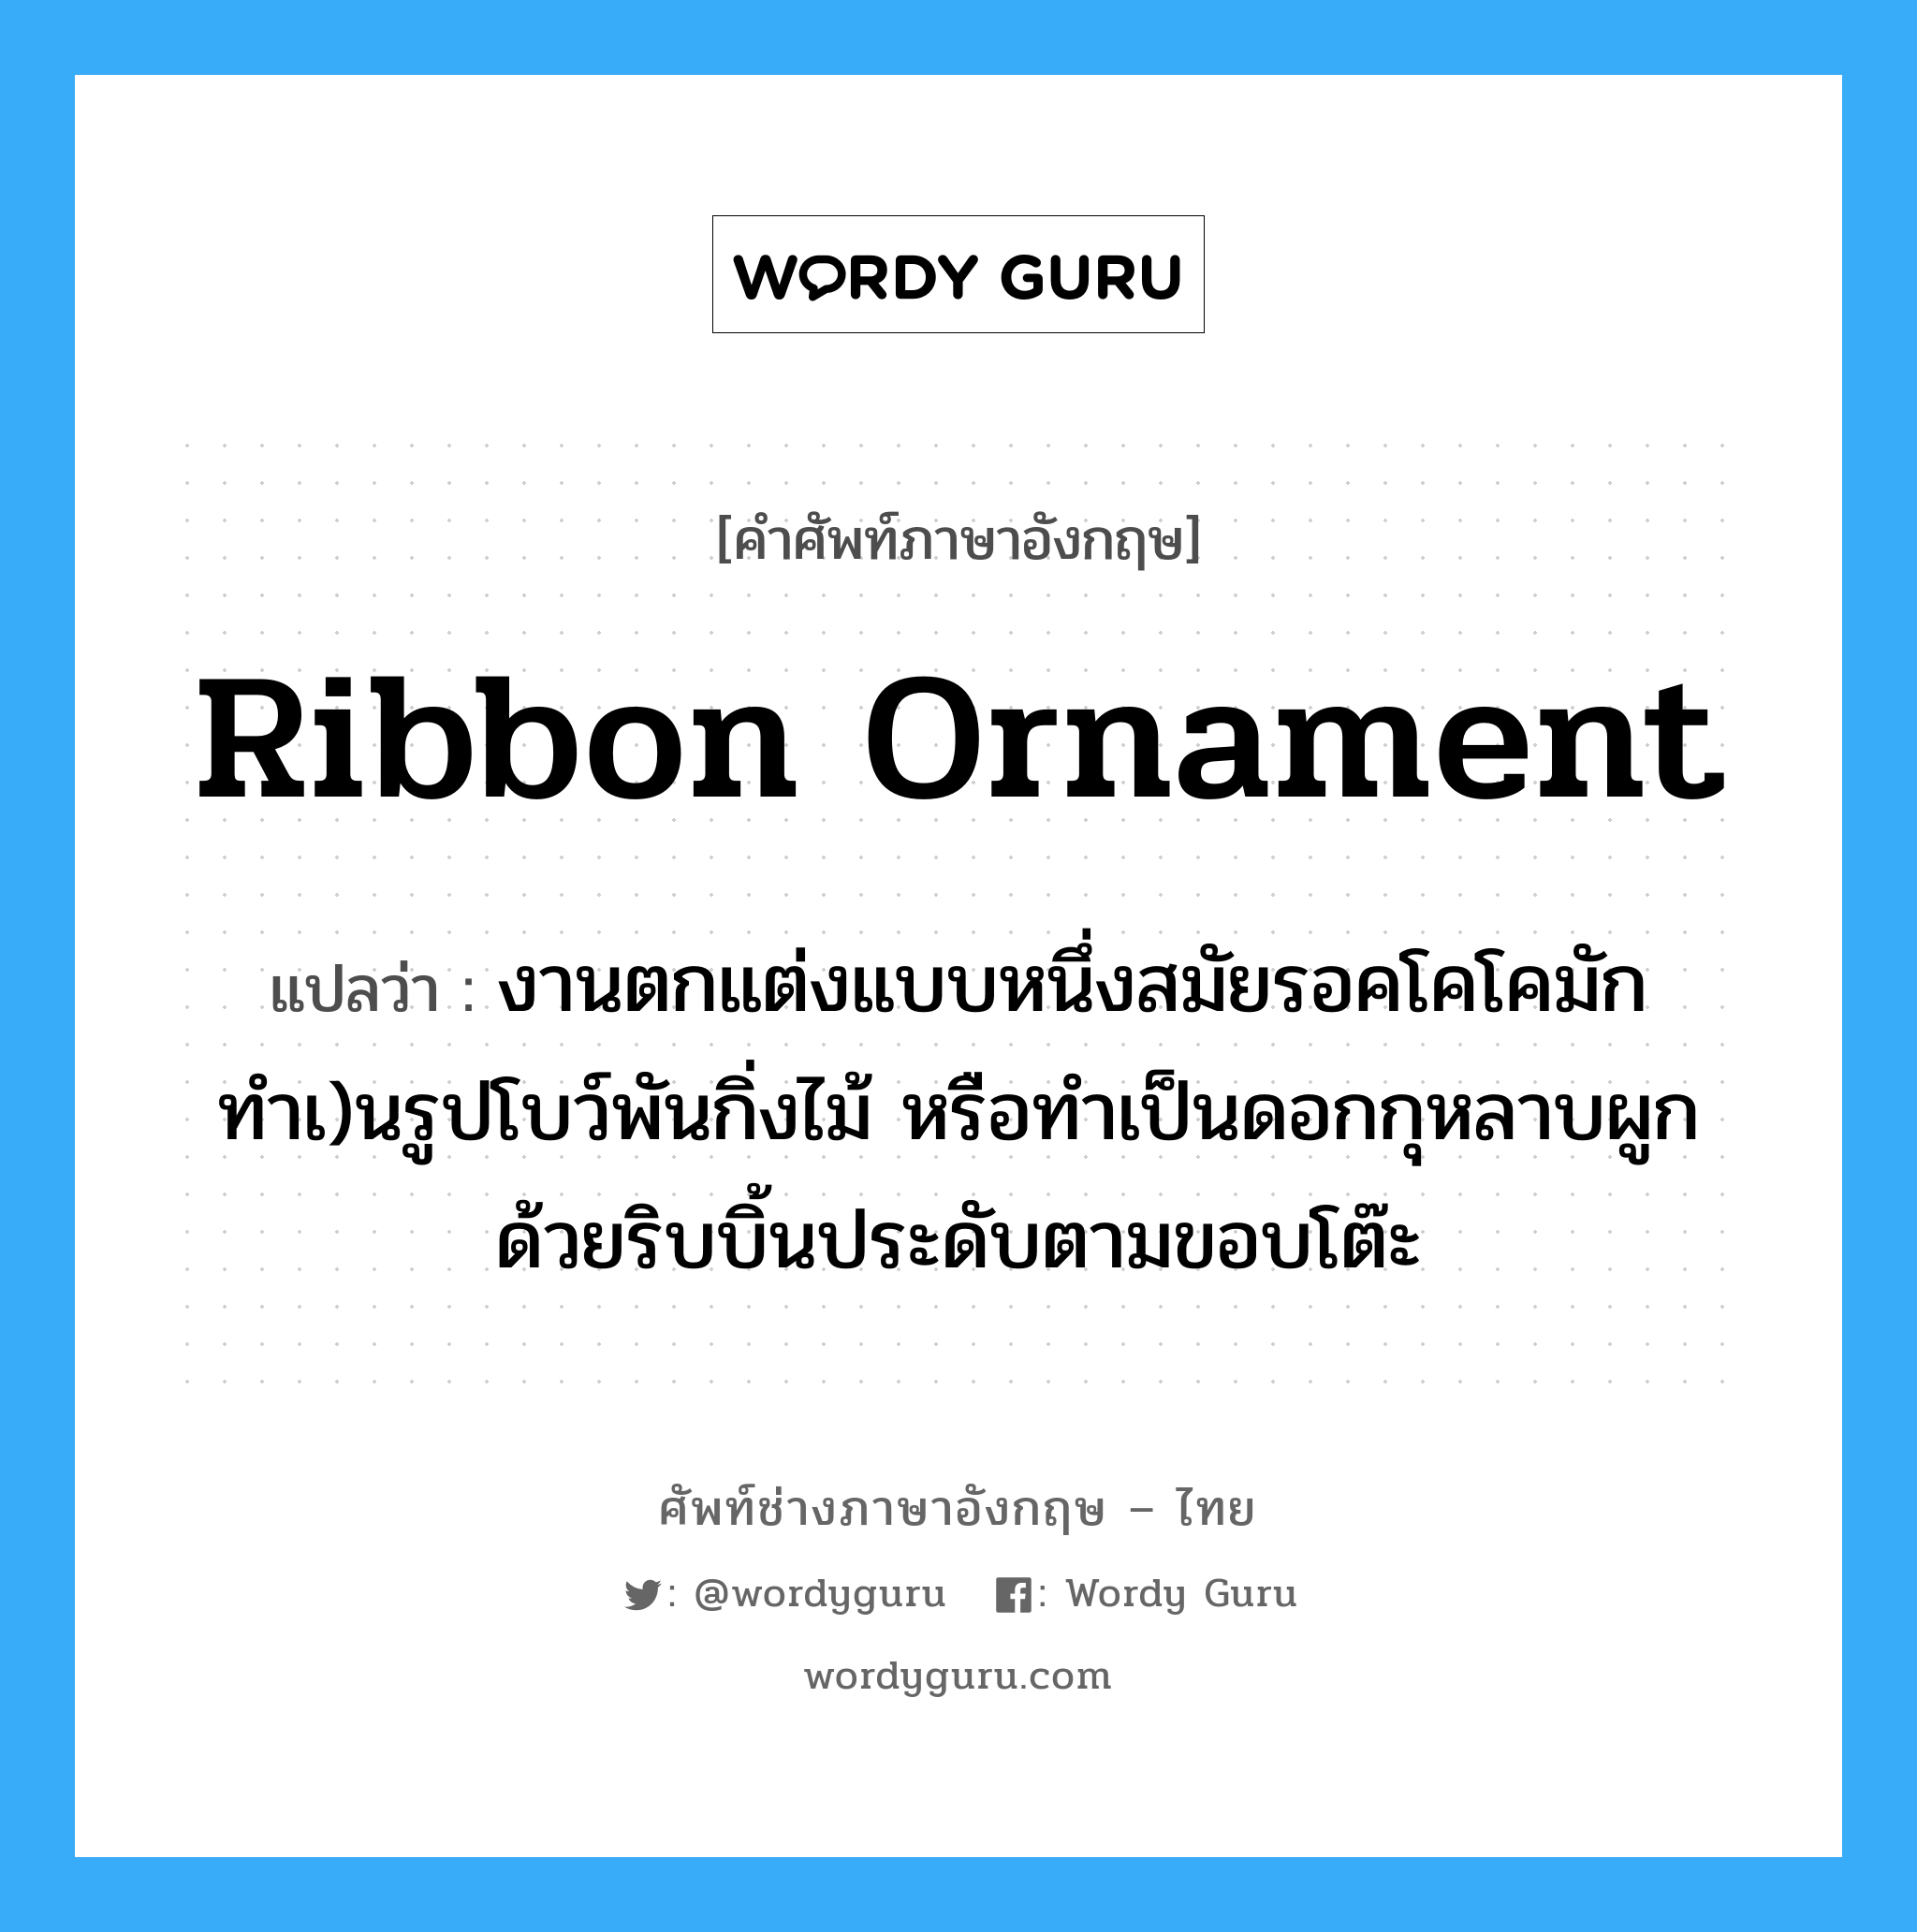 ribbon ornament แปลว่า?, คำศัพท์ช่างภาษาอังกฤษ - ไทย ribbon ornament คำศัพท์ภาษาอังกฤษ ribbon ornament แปลว่า งานตกแต่งแบบหนึ่งสมัยรอคโคโคมักทำเ)นรูปโบว์พันกิ่งไม้ หรือทำเป็นดอกกุหลาบผูกด้วยริบบิ้นประดับตามขอบโต๊ะ